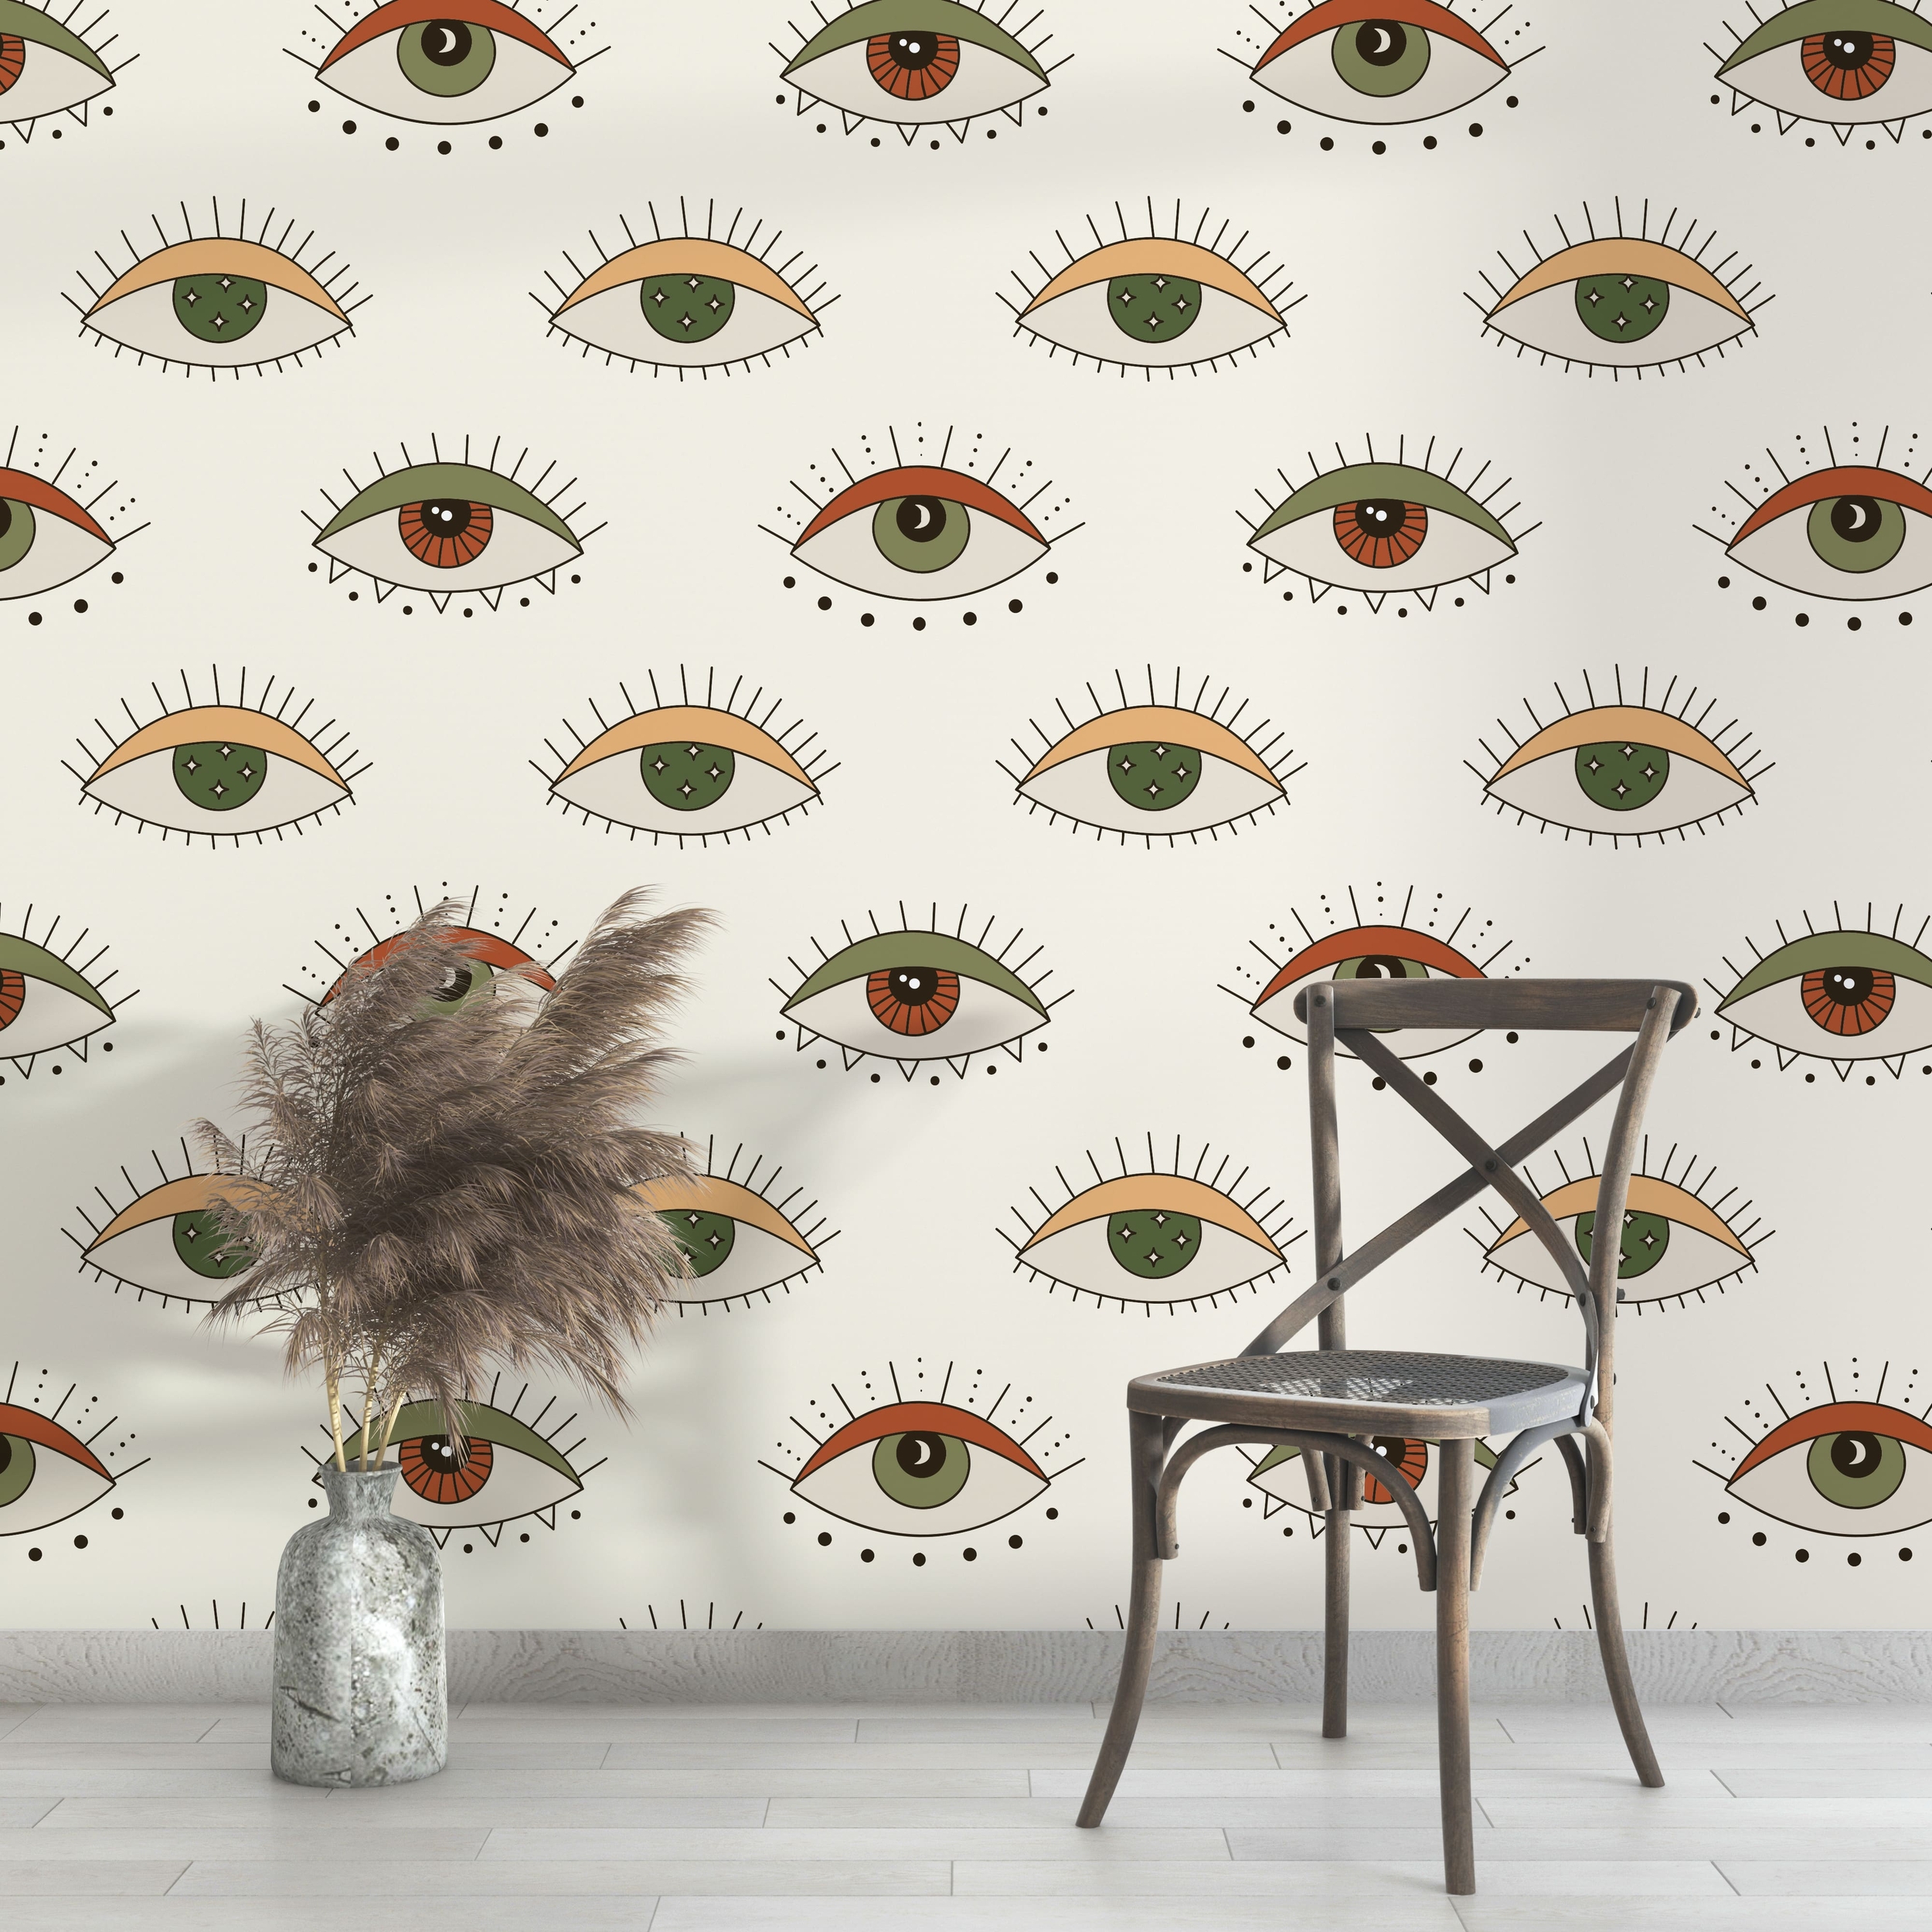 PP104-mur-papier-peint-adhesif-decoratif-revetement-vinyle-motifs-yeux-kaki-pop-art-renovation-meuble-mur-min